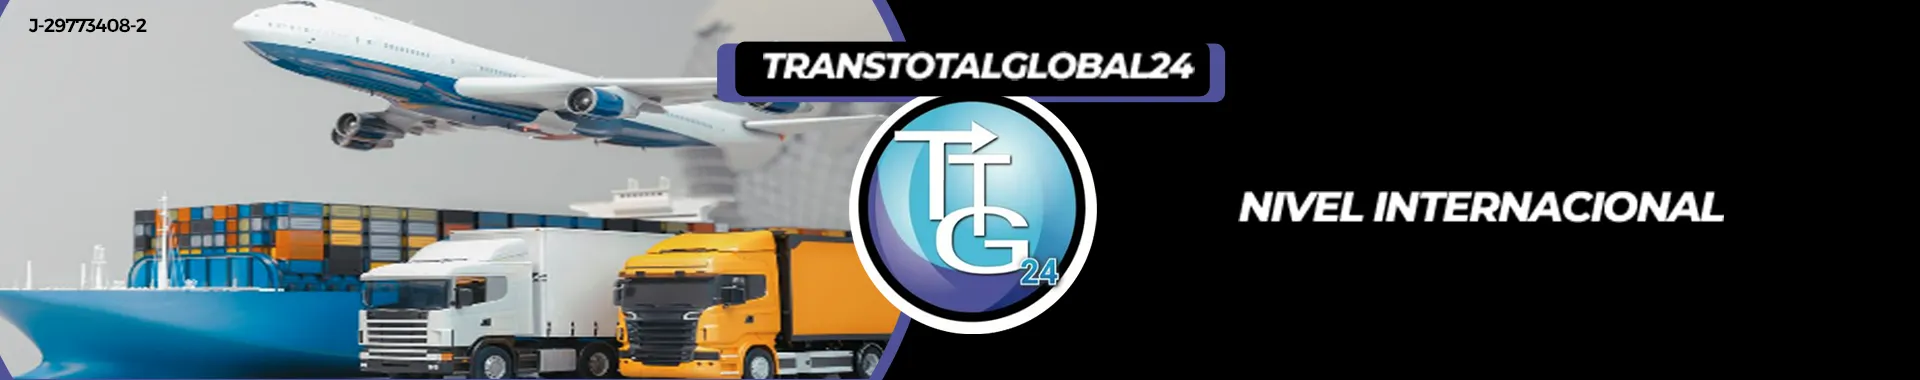 Imagen 4 del perfil de Mudanzas y Encomiendas Transtotal Global 24